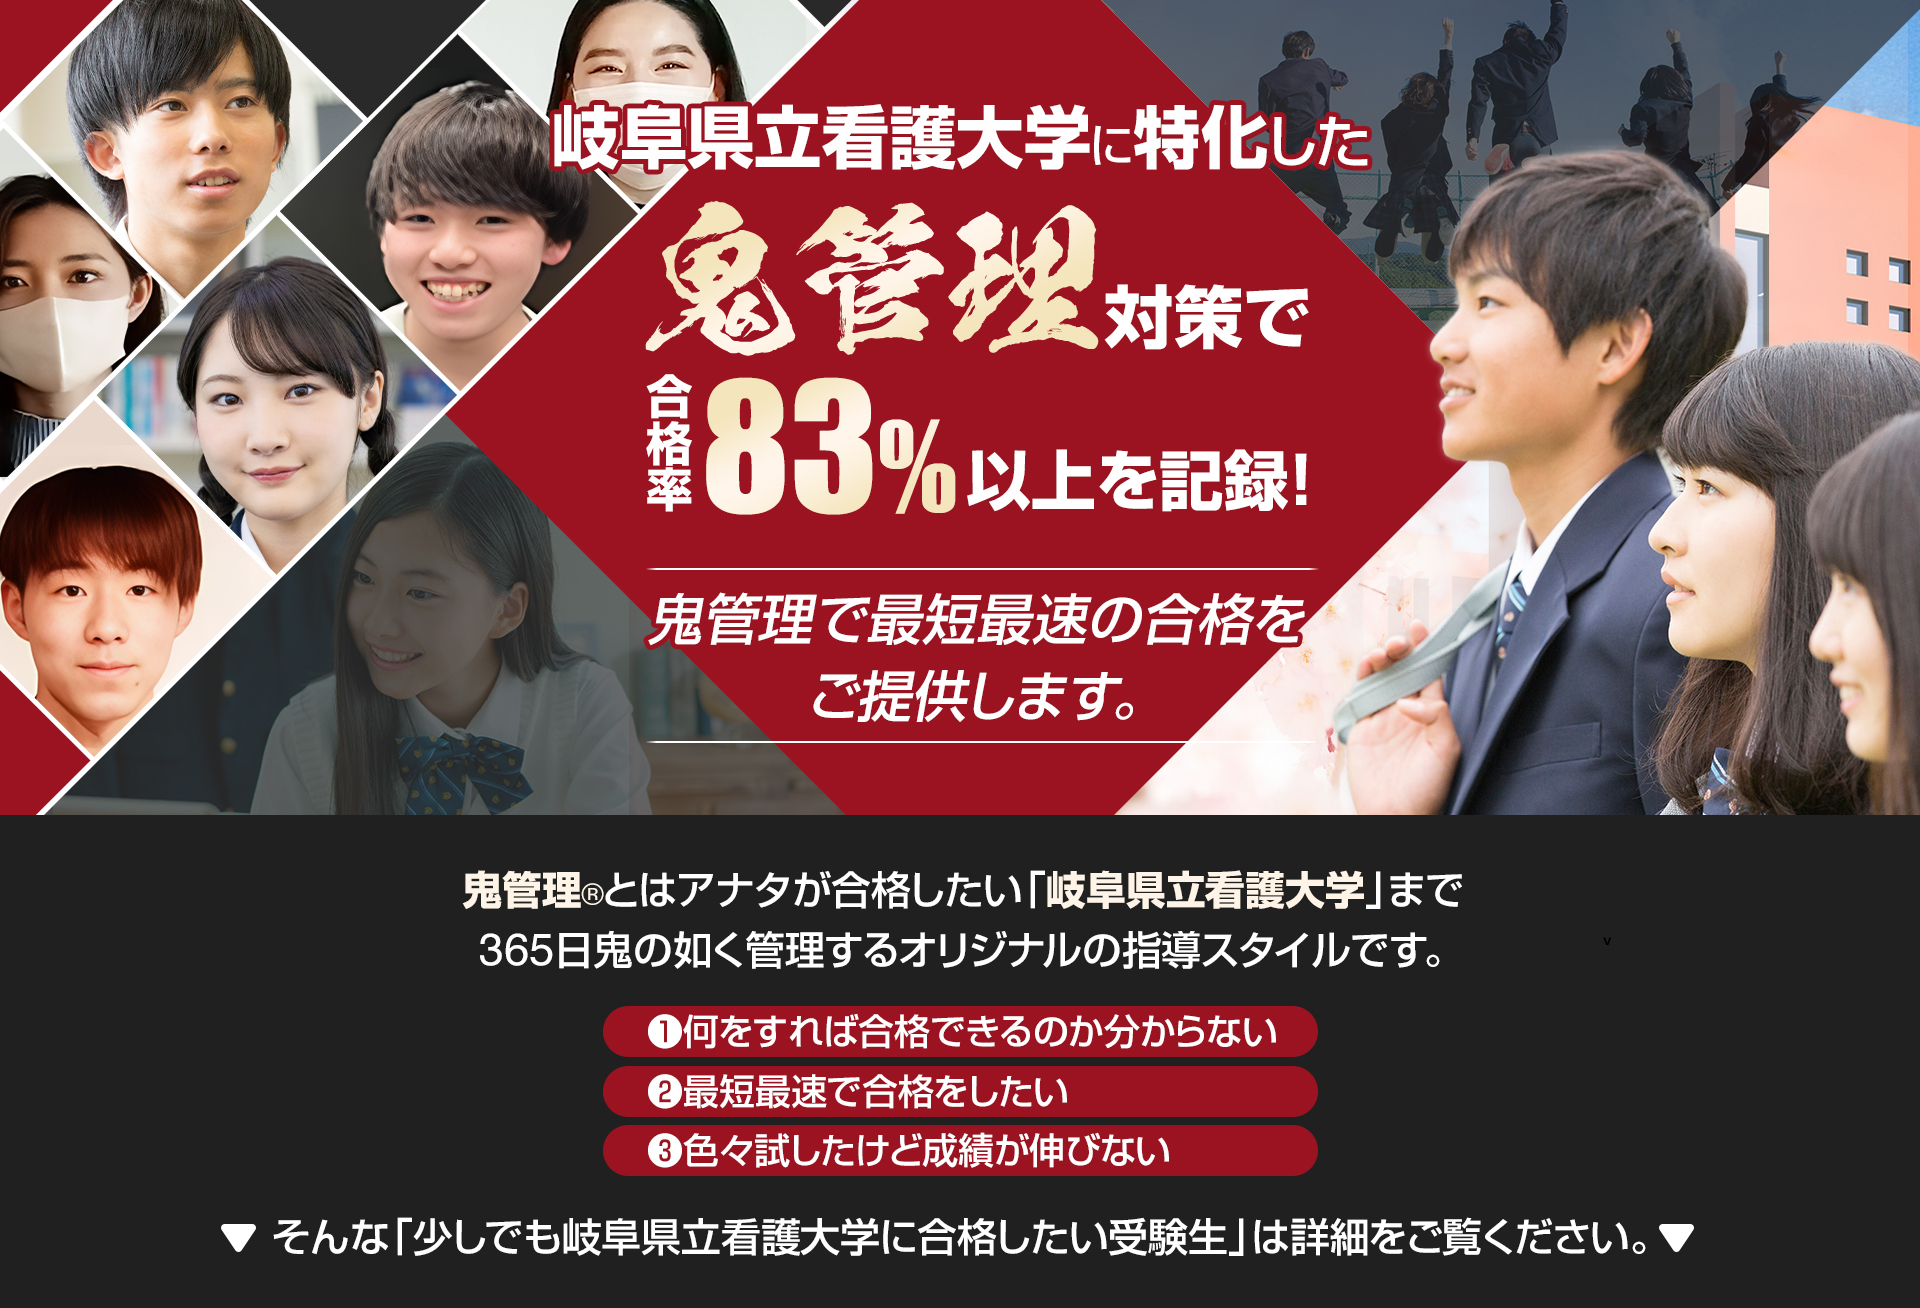 岐阜県立看護大学に特化した鬼管理対策で合格率83％以上を記録。鬼管理でアナタが合格したい岐阜県立看護大学への最短最速の合格を提供します。